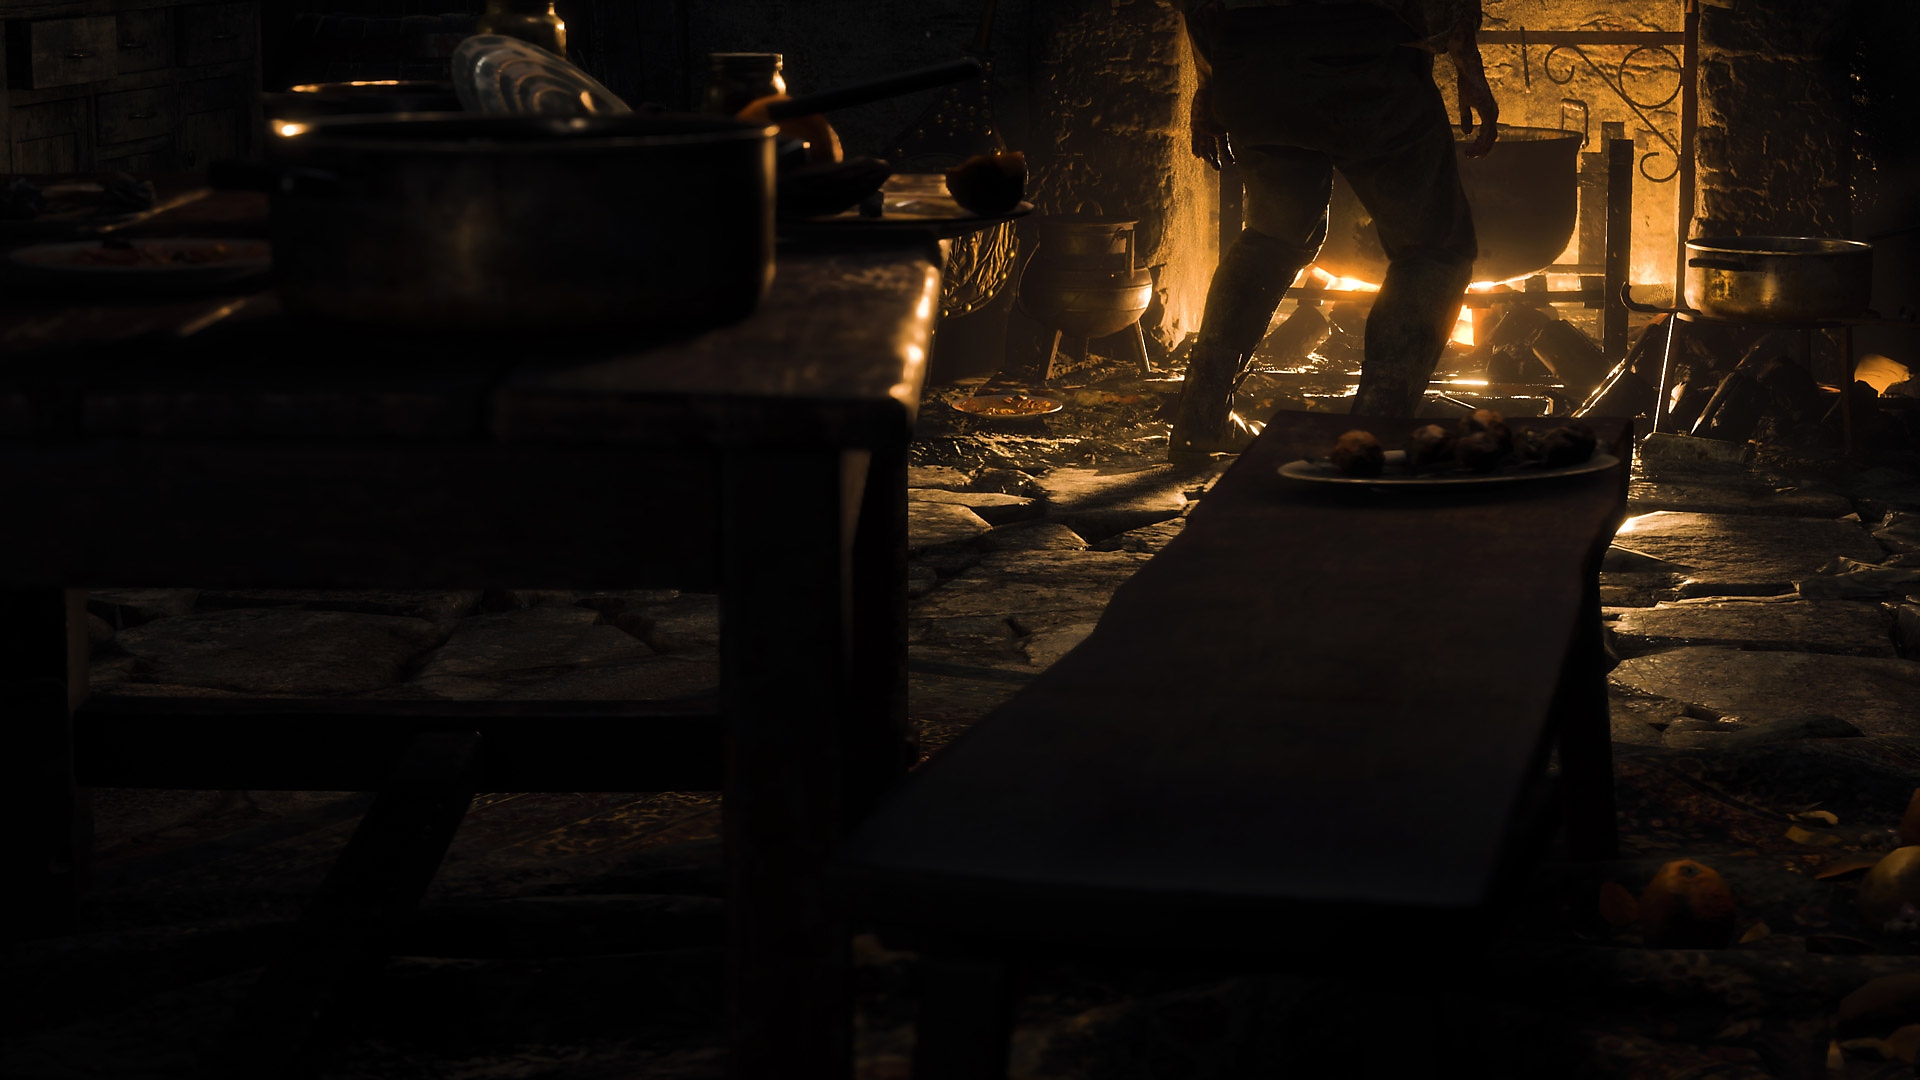 Istantanea della schermata di Resident Evil 4 che mostra una cucina rurale illuminata solo dalla luce del fuoco.